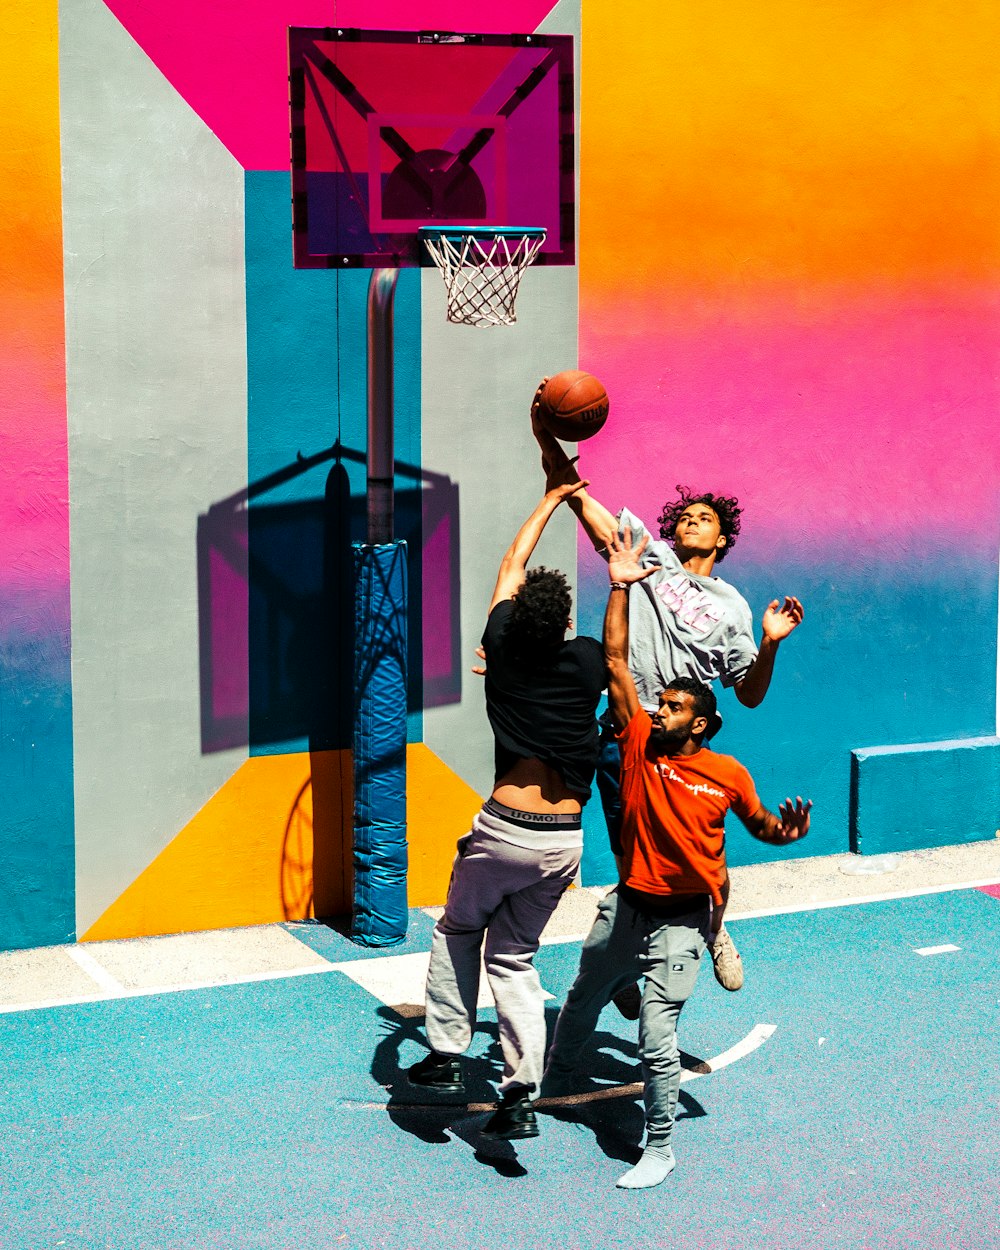 Tres personas jugando al baloncesto